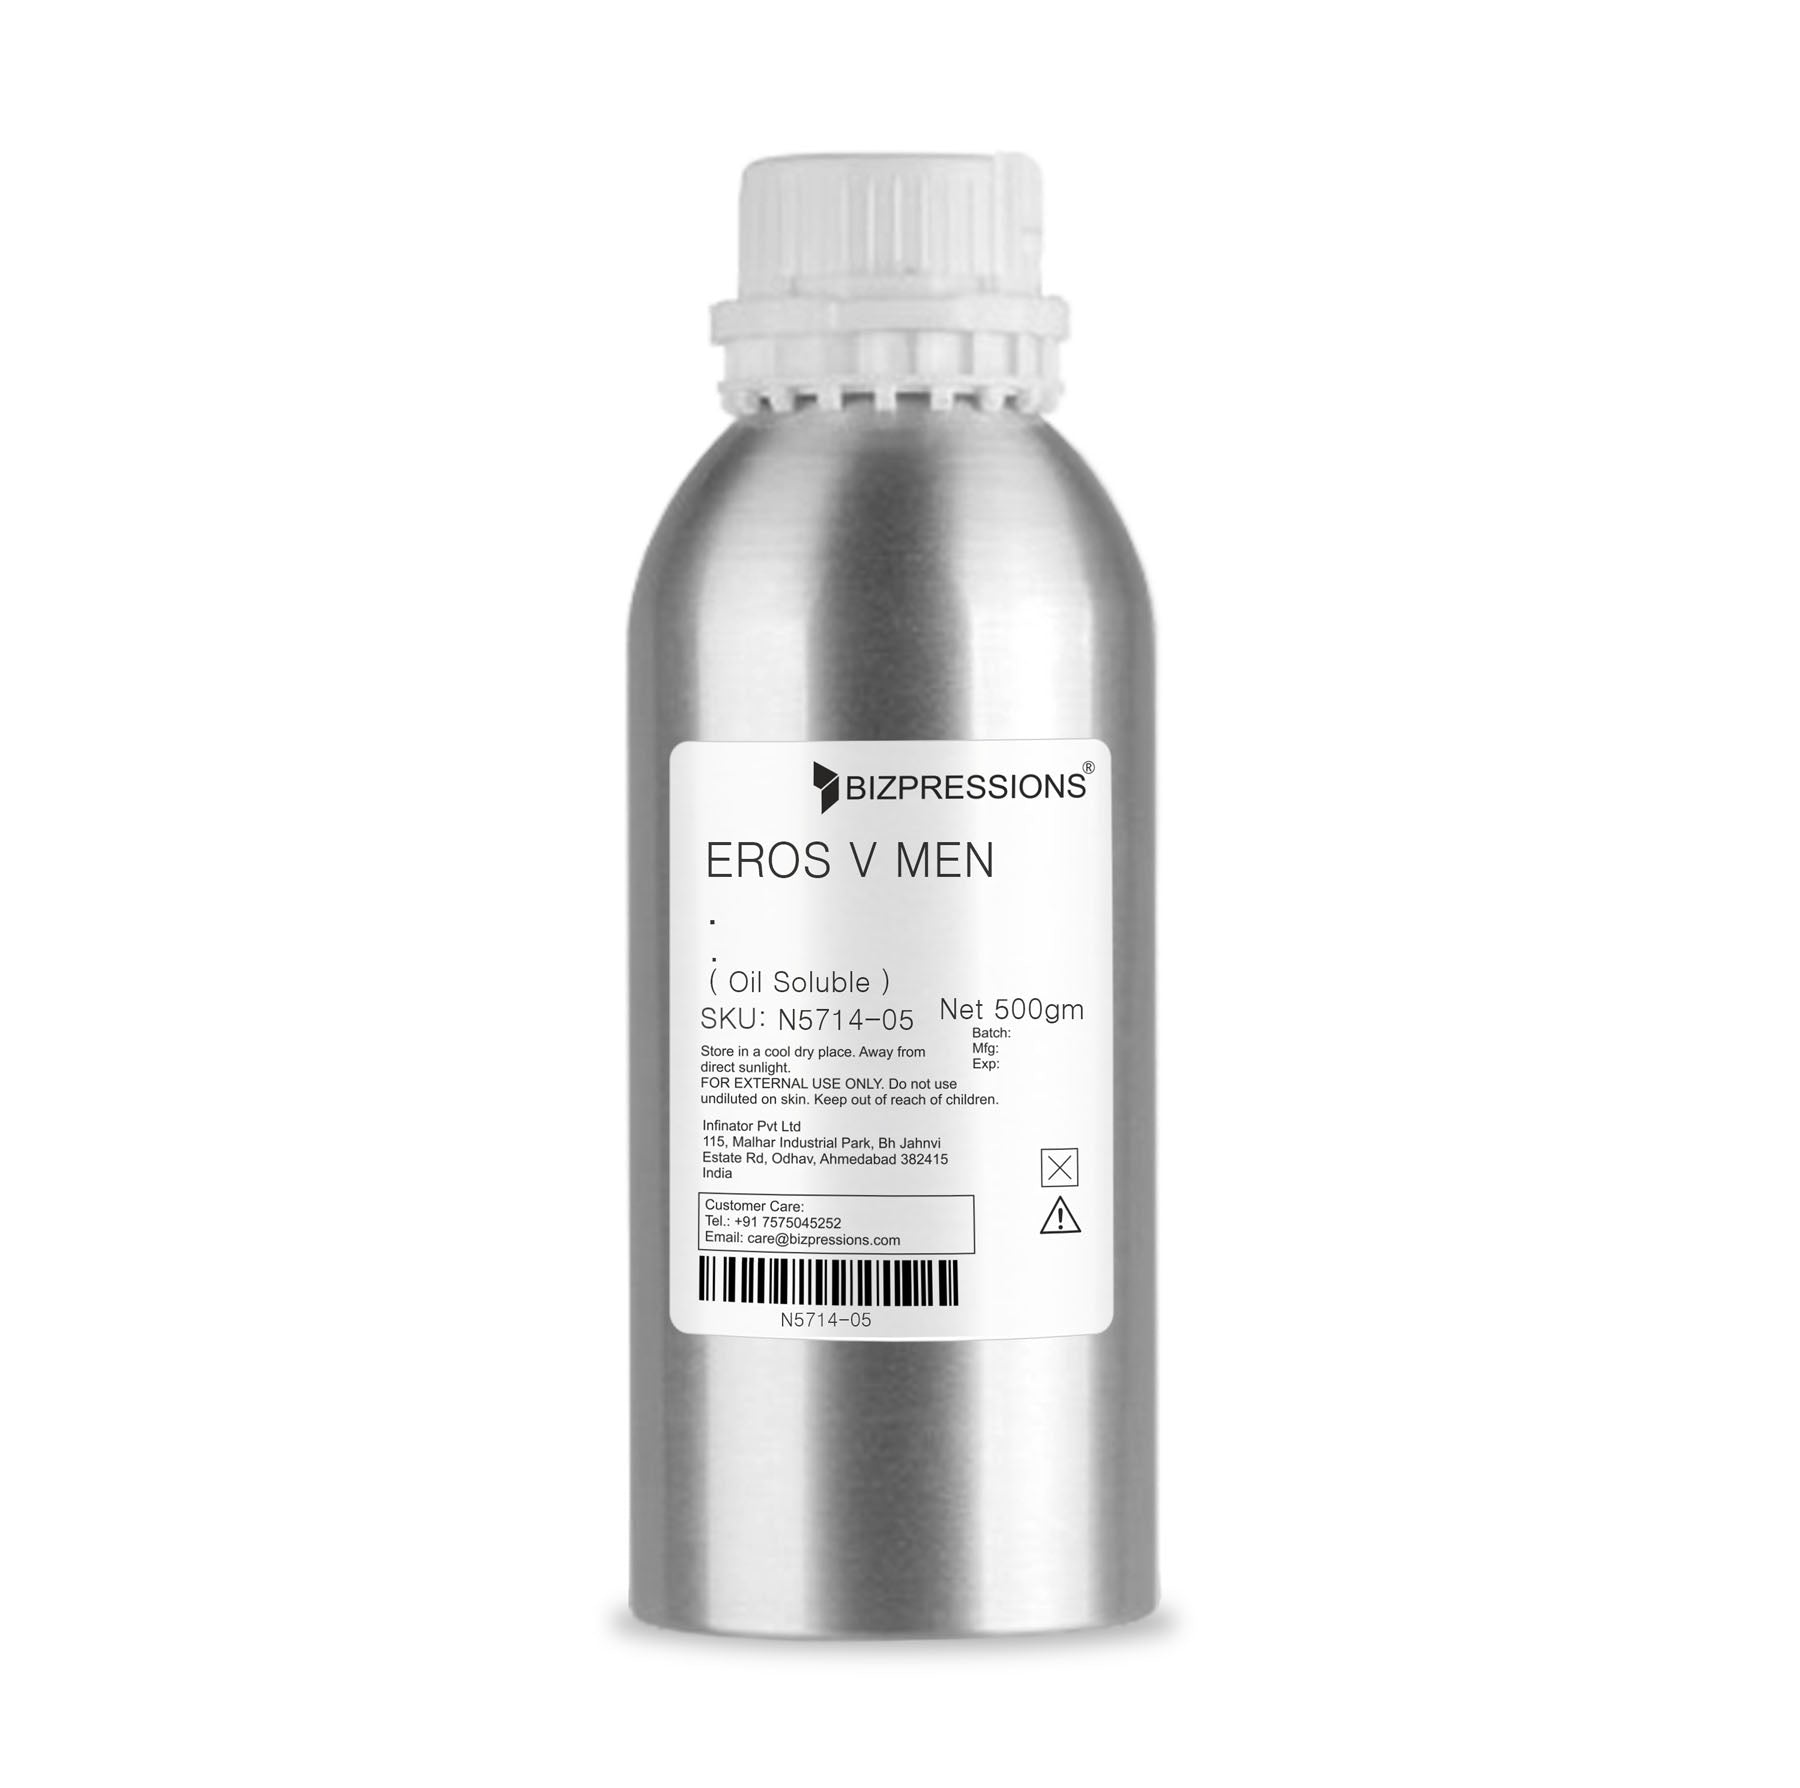 EROS V MEN - Fragrance ( Oil Soluble ) - 500 gm